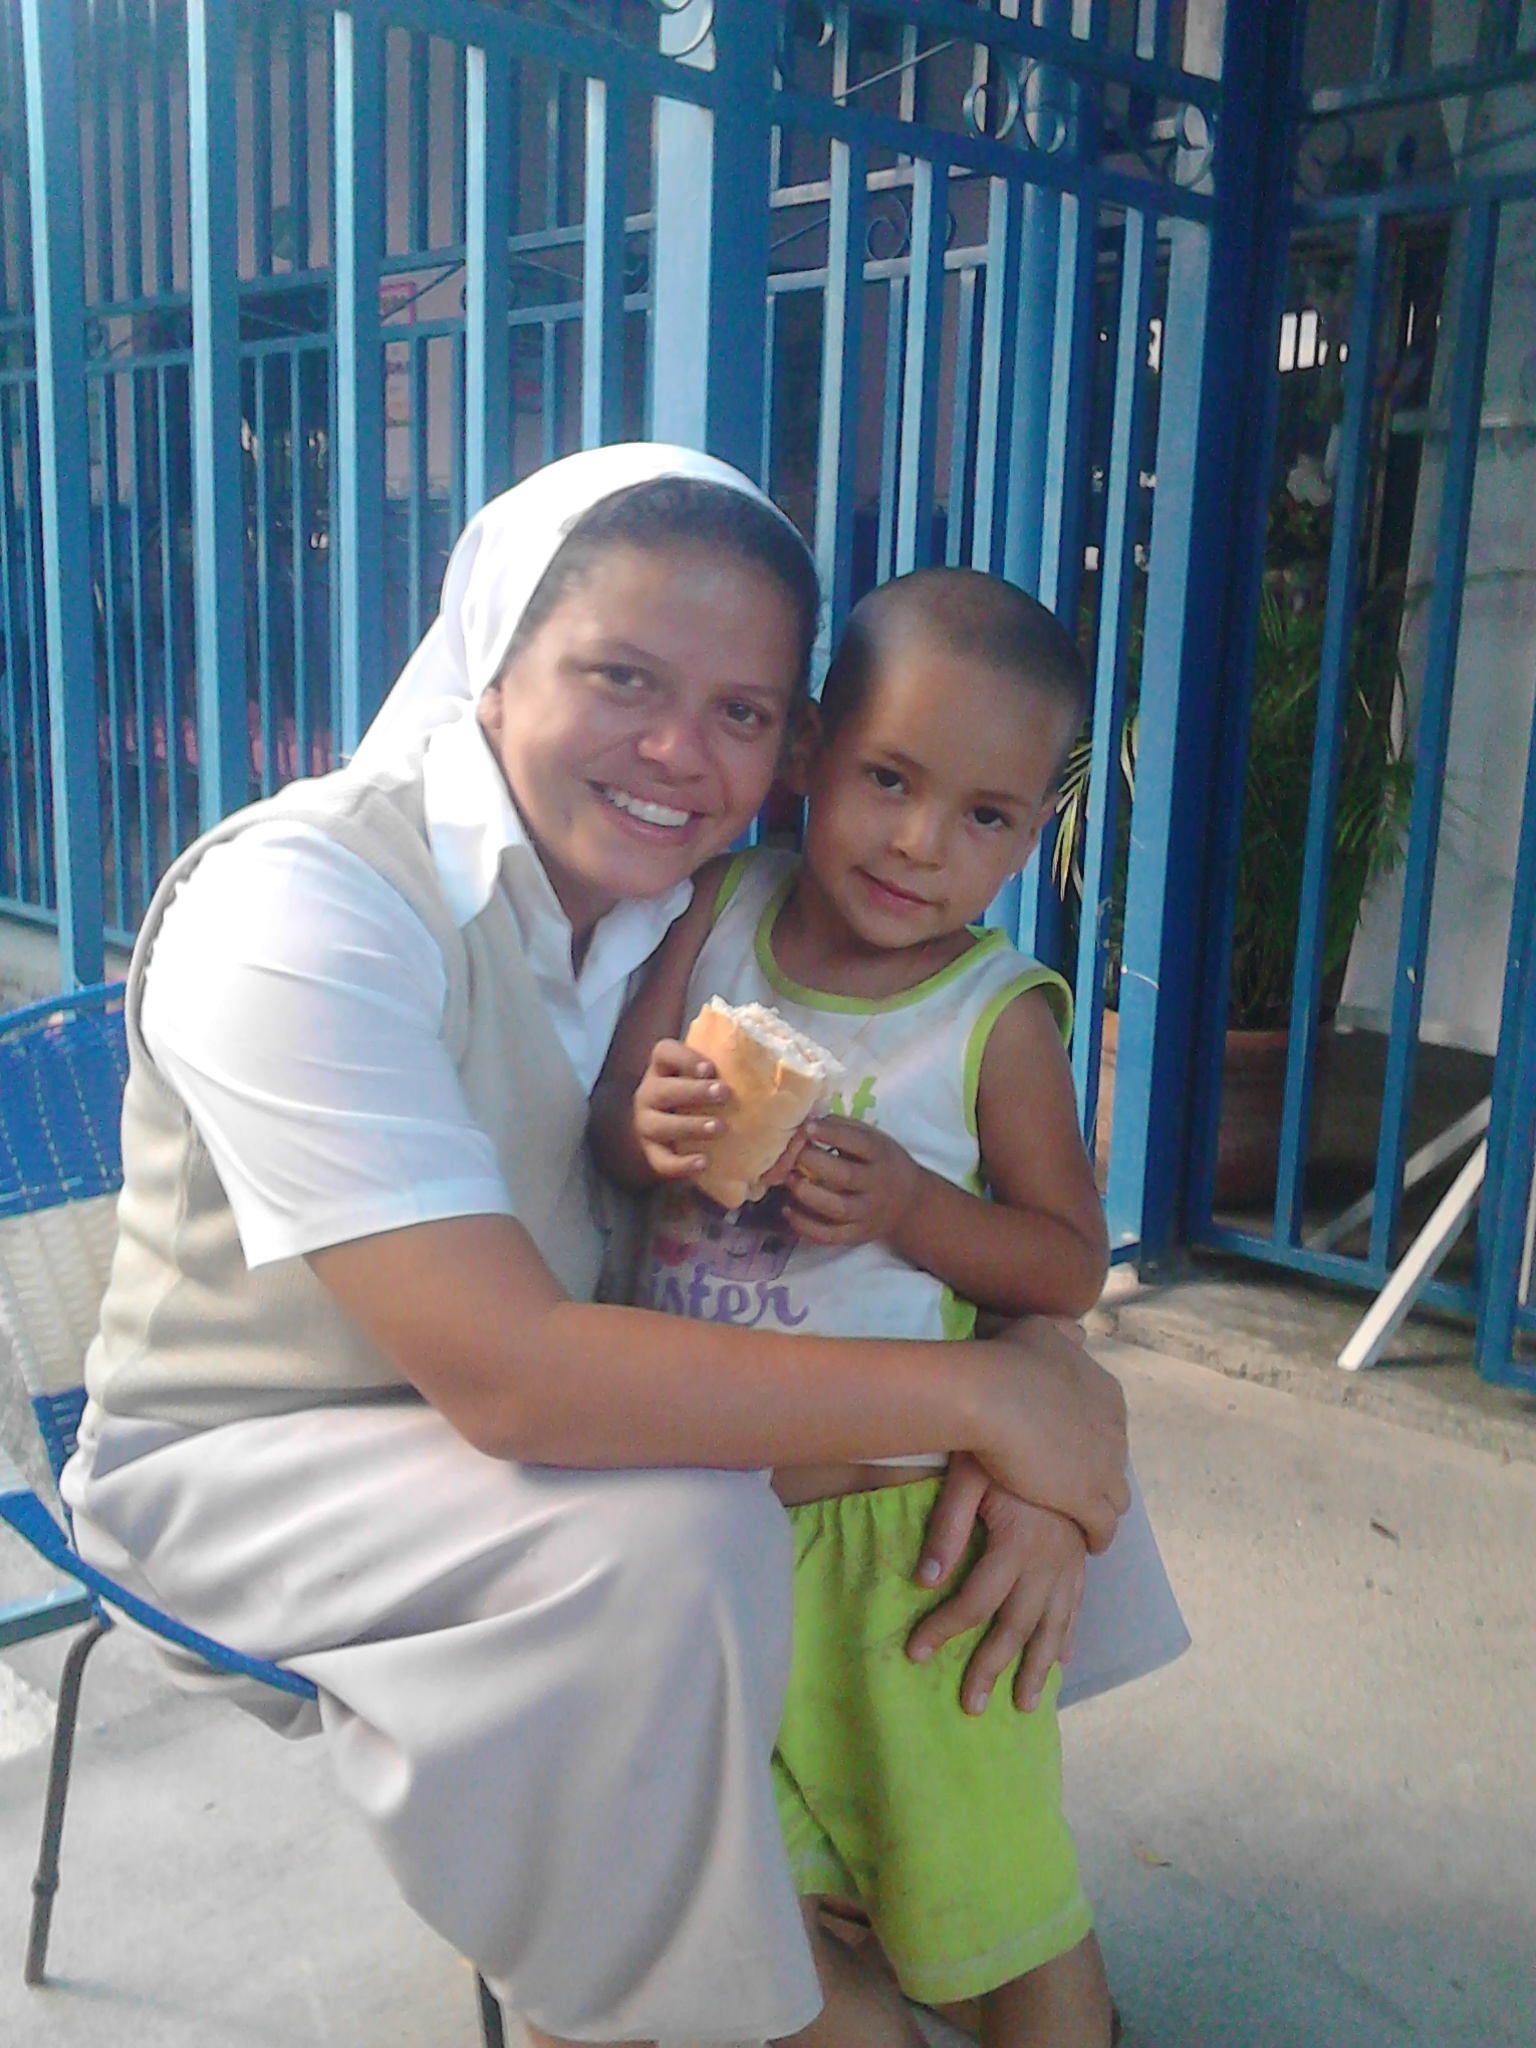 Sister in Venezuela